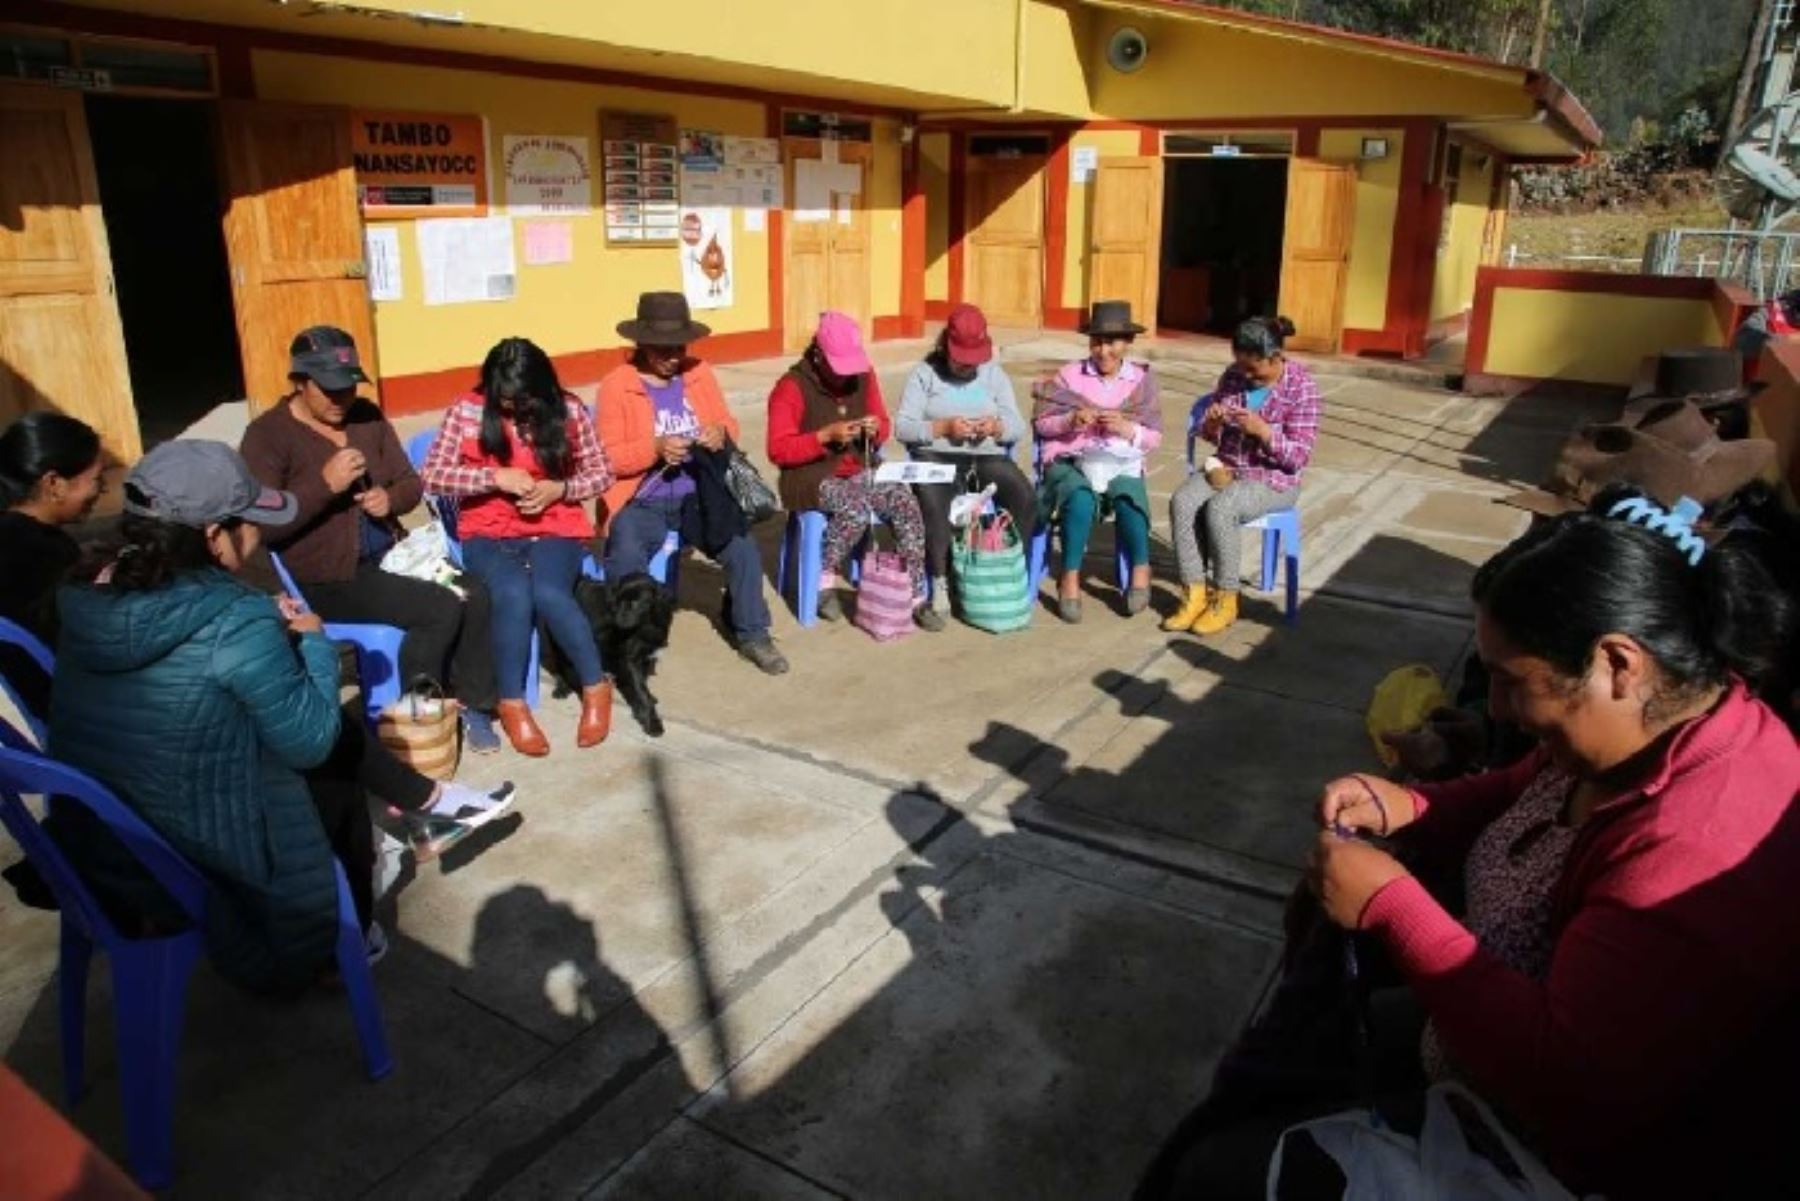 El Ministerio de Desarrollo e Inclusión Social (Midis) fortalece el desarrollo igualitario y el rol de la mujer en la sociedad a través de la promoción de prendas y juguetes de lana que 20 mamás quechua hablantes tejen en el Tambo Anansayocc, ubicado en la comunidad rural de Ocobamba, región Apurímac.